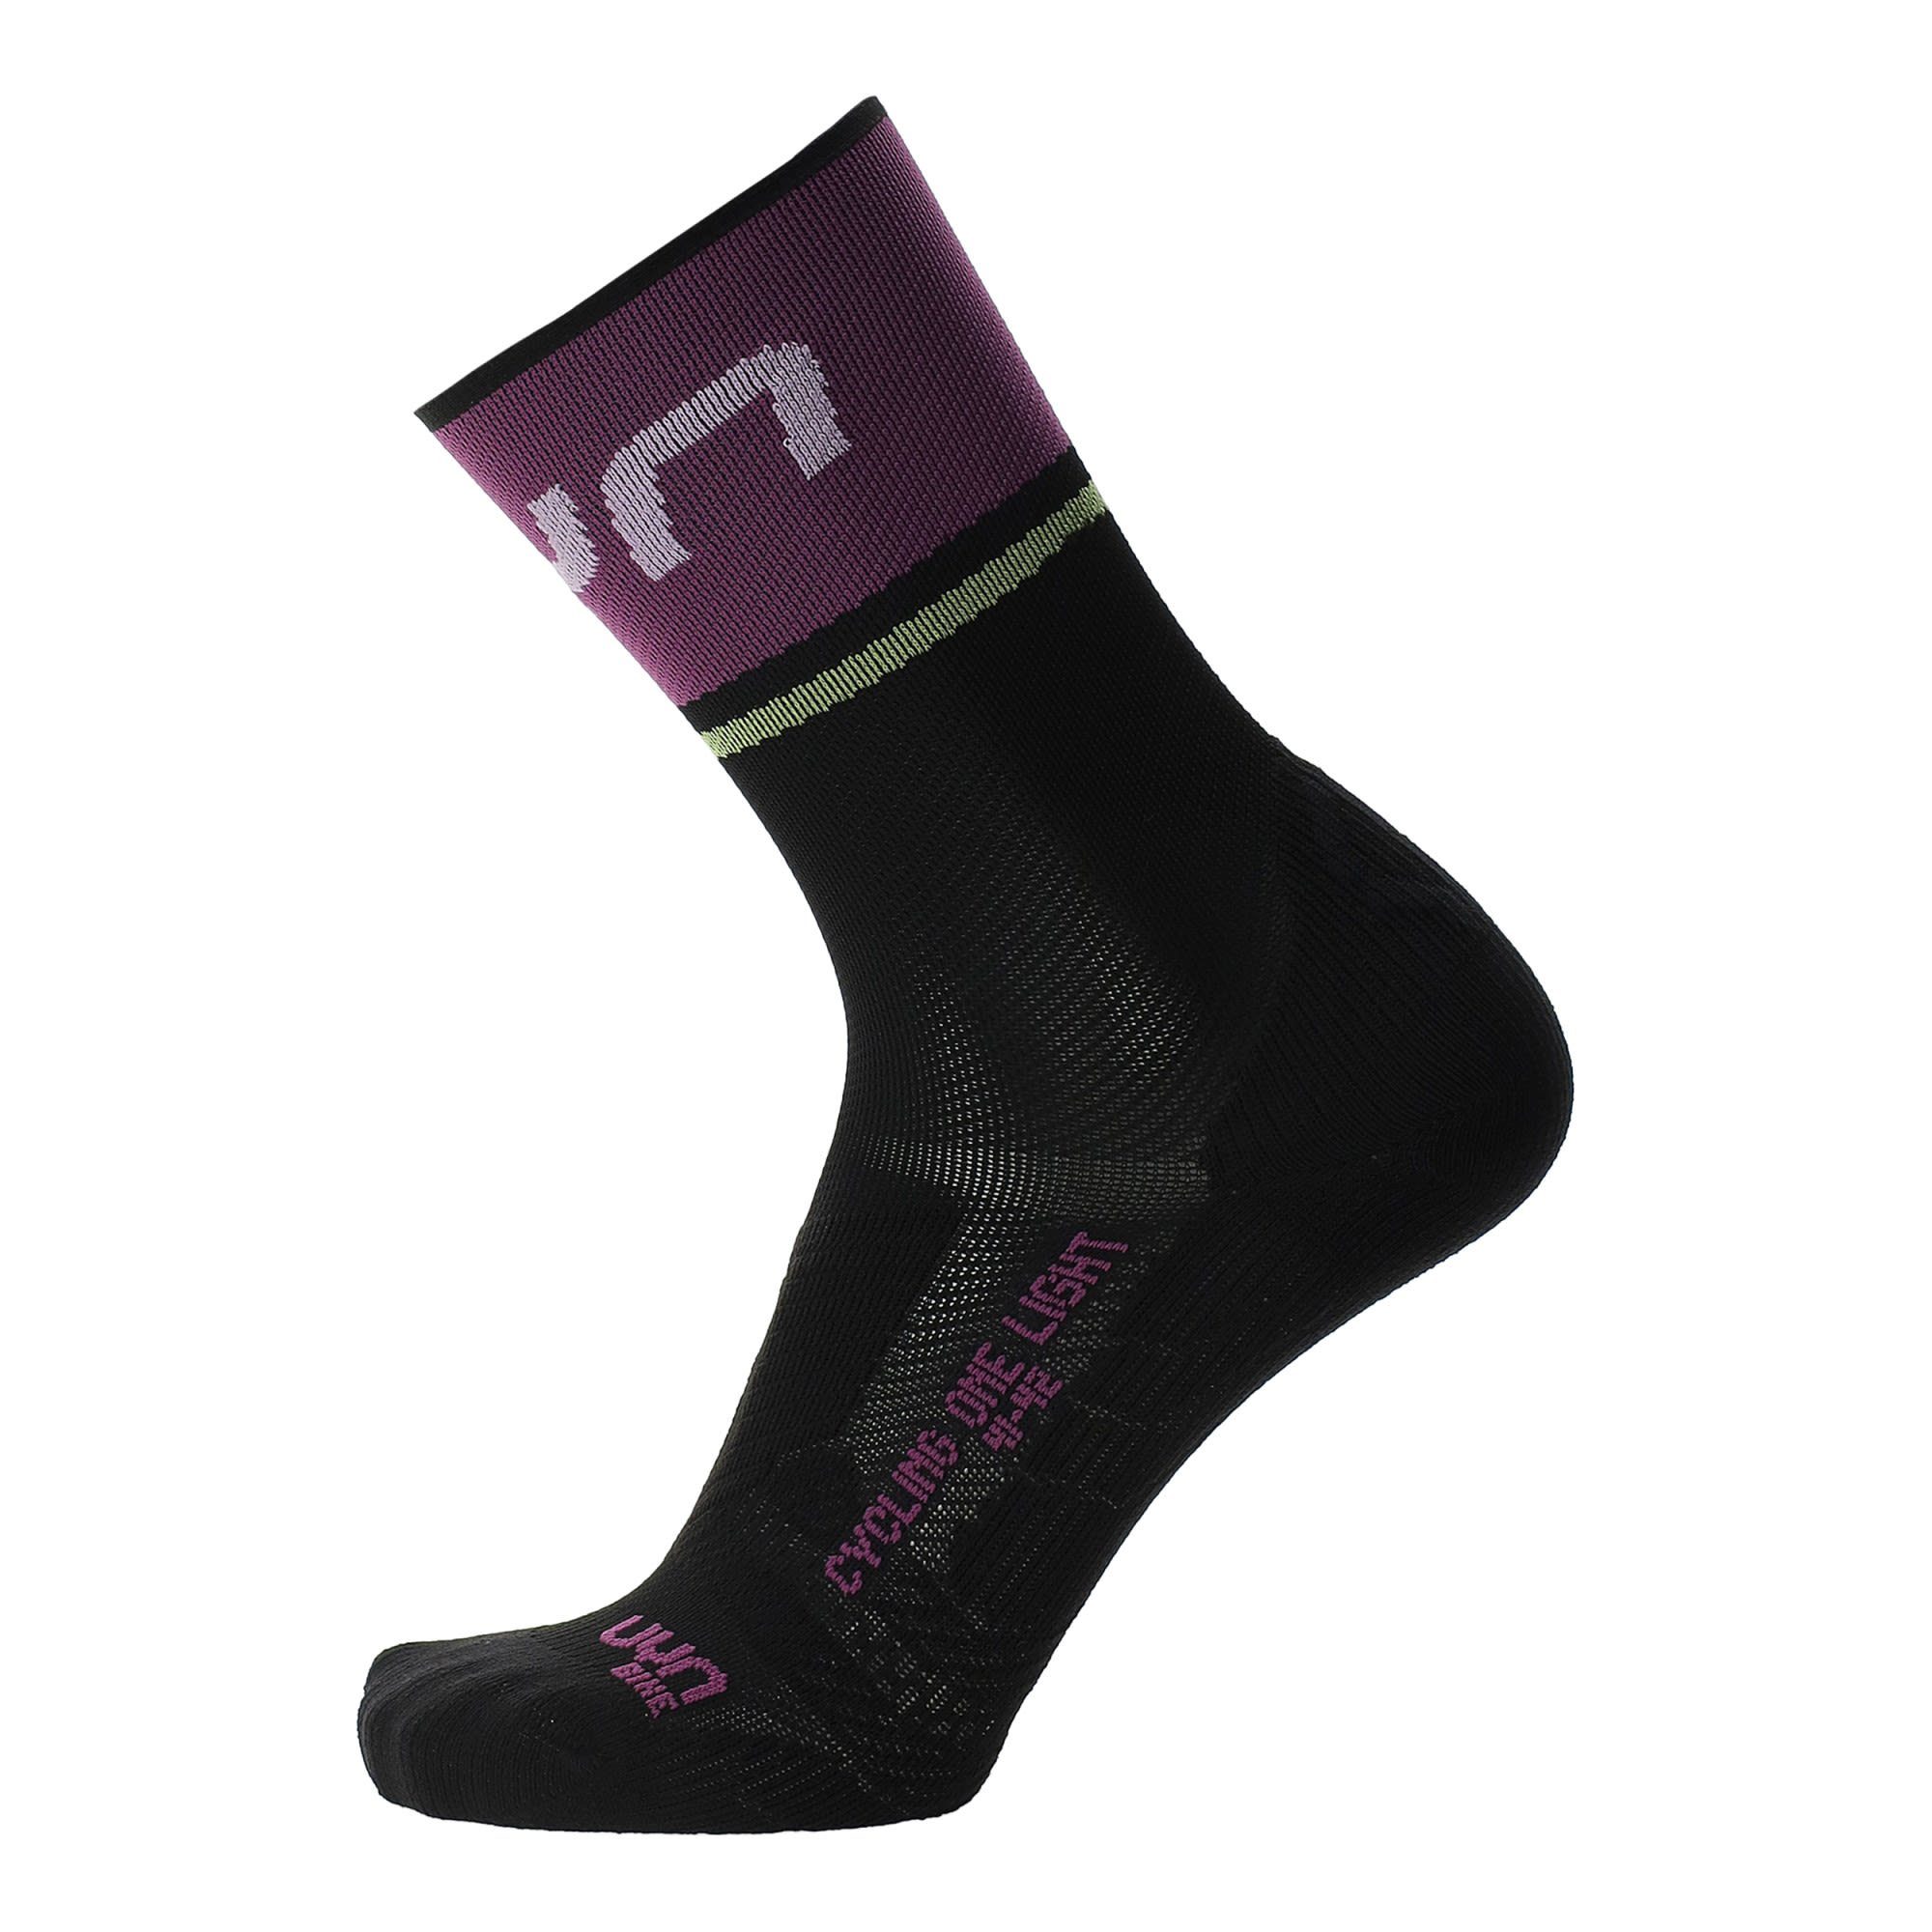 Black One W Light UYN Damen Skisocken Cycling Uyn Purple Socks -